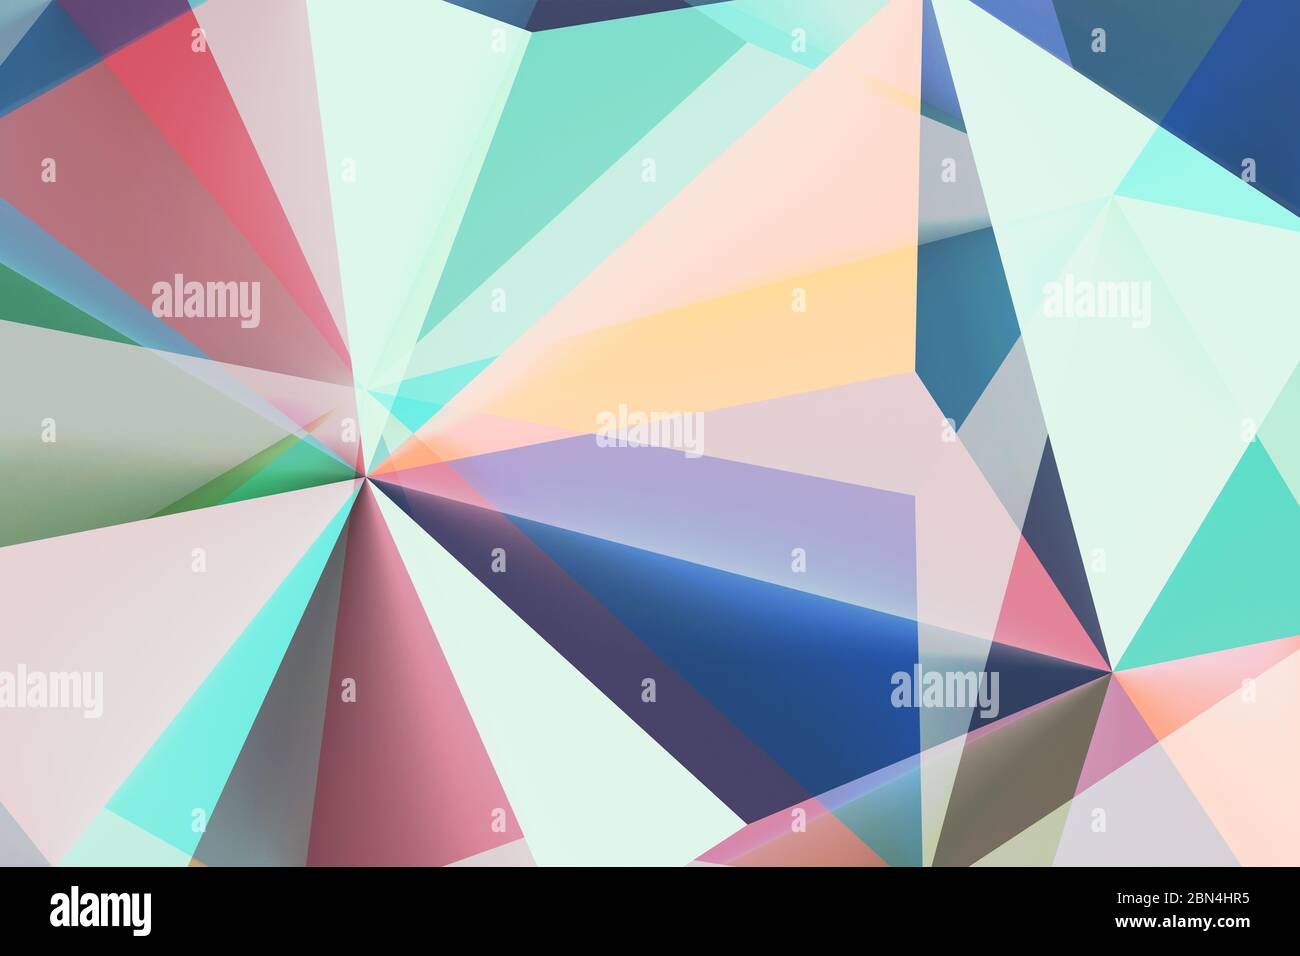 Abstrakt geometrischen Hintergrund mit bunten Polygonen, Computer-Grafik-Illustration Stockfoto